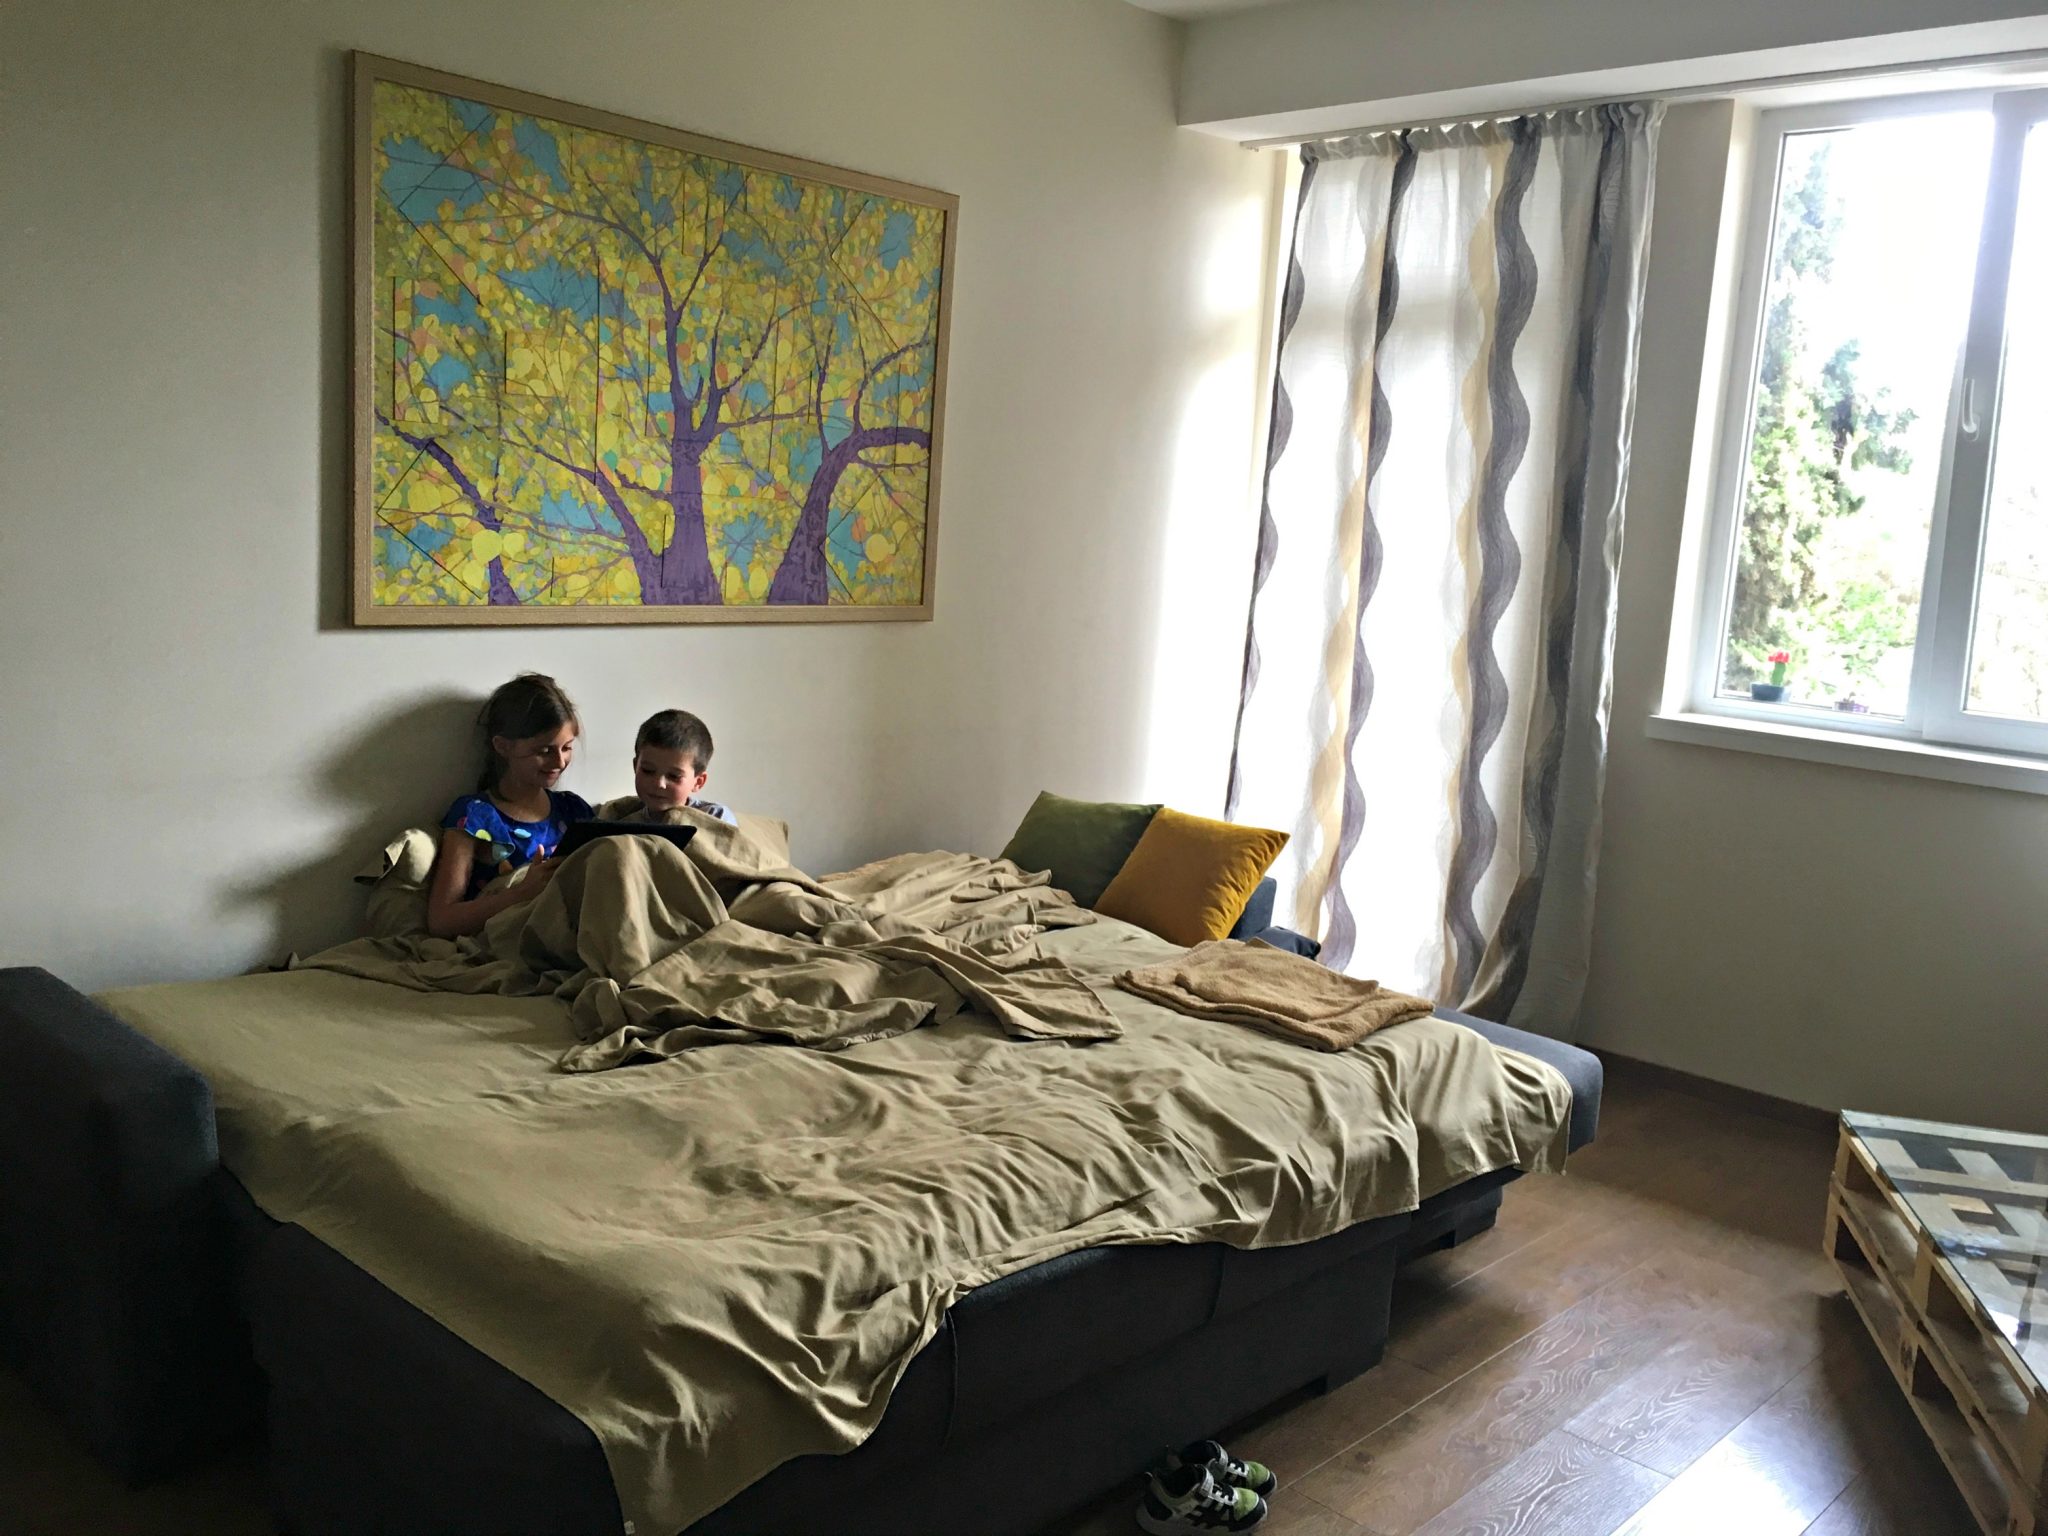 Kids in living room, Tbilisi | Explorer Momma